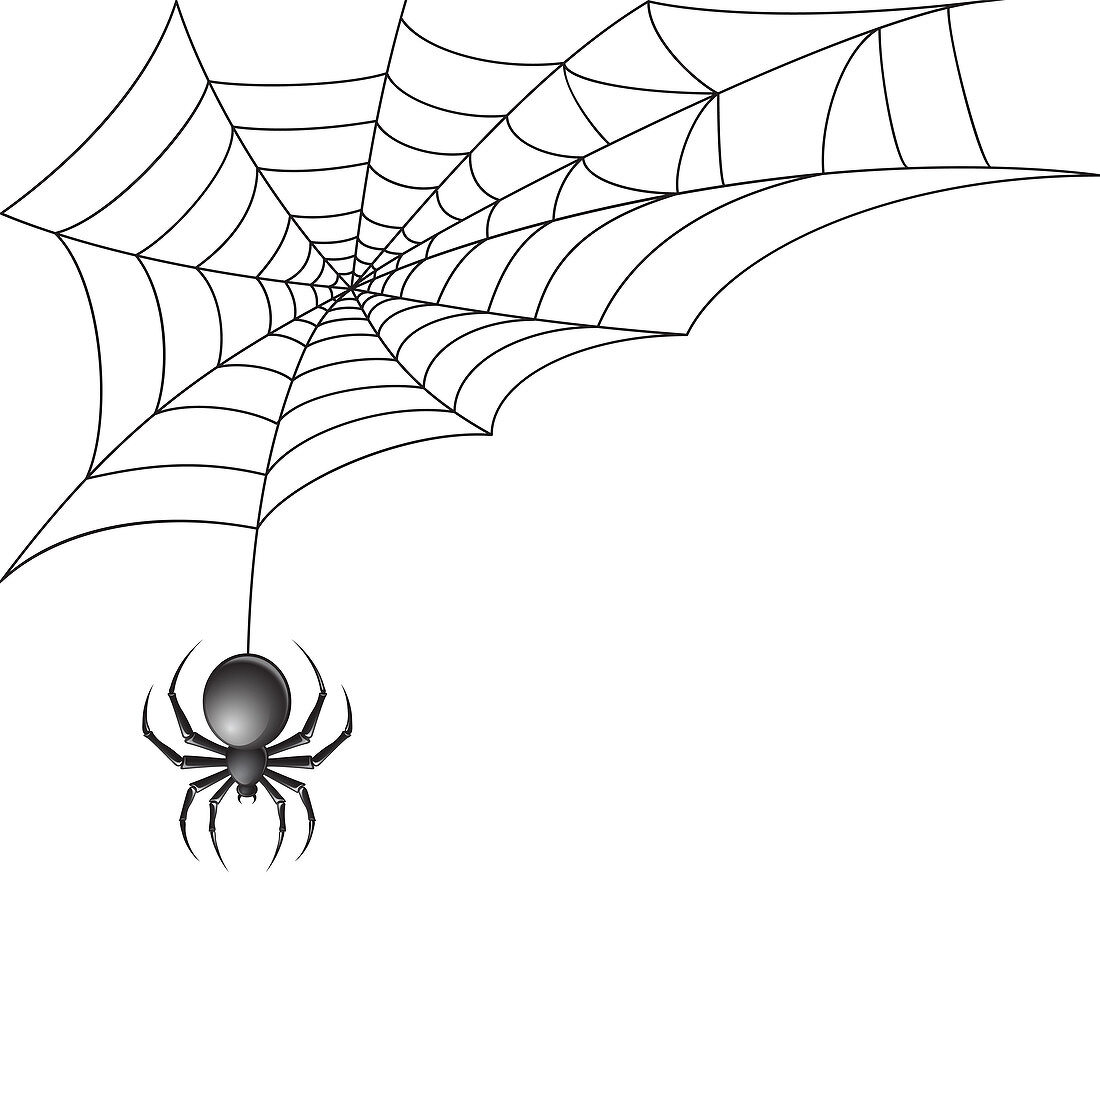 Spider, illustration